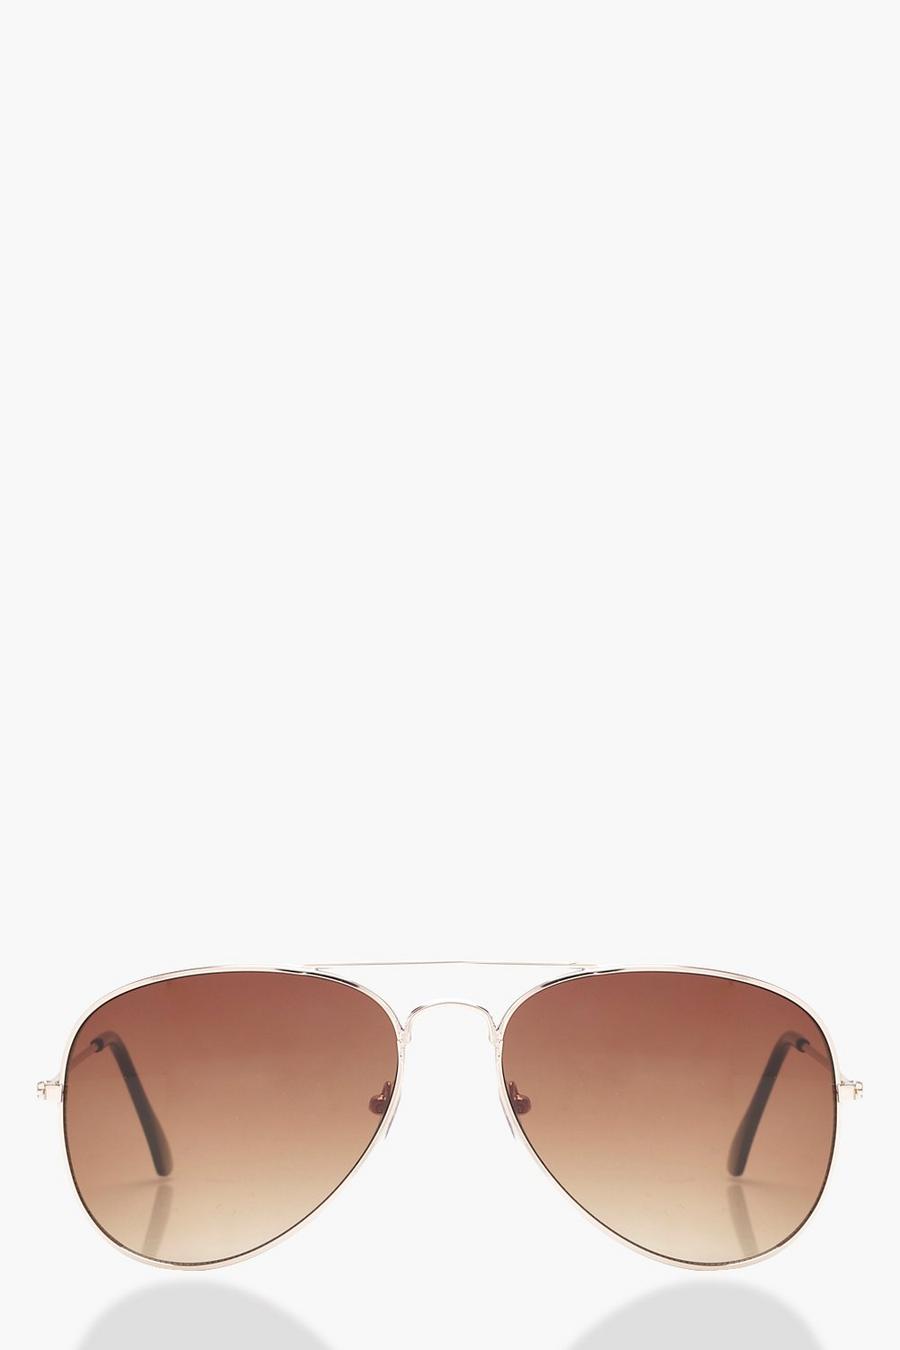 Pilotenbrille mit braunen Gläsern, Braun